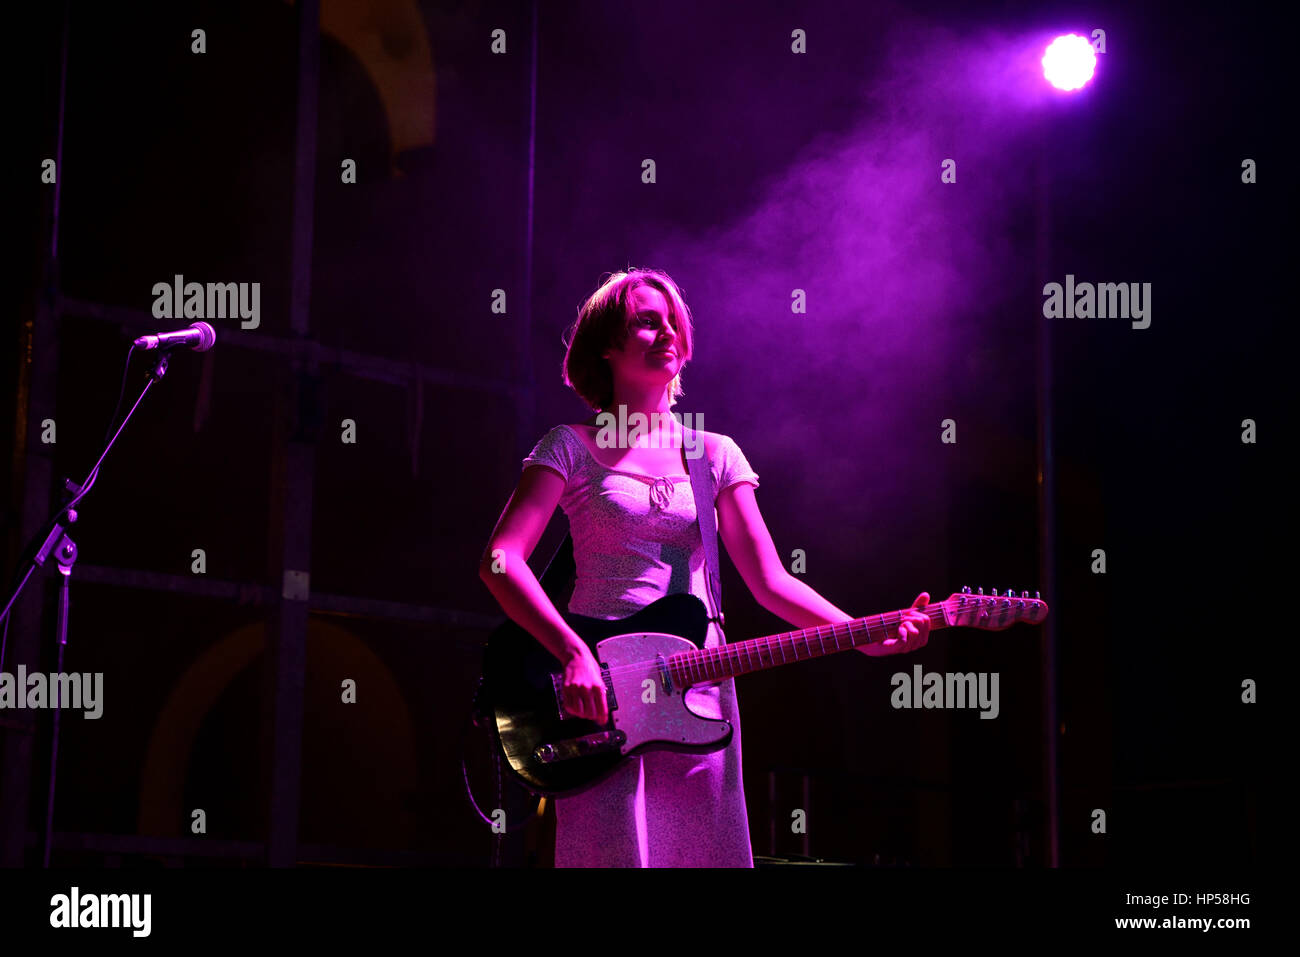 BARCELONA - SEP 18: Trauern (Band) in Konzert im BAM Festival am 18. September 2015 in Barcelona, Spanien. Stockfoto